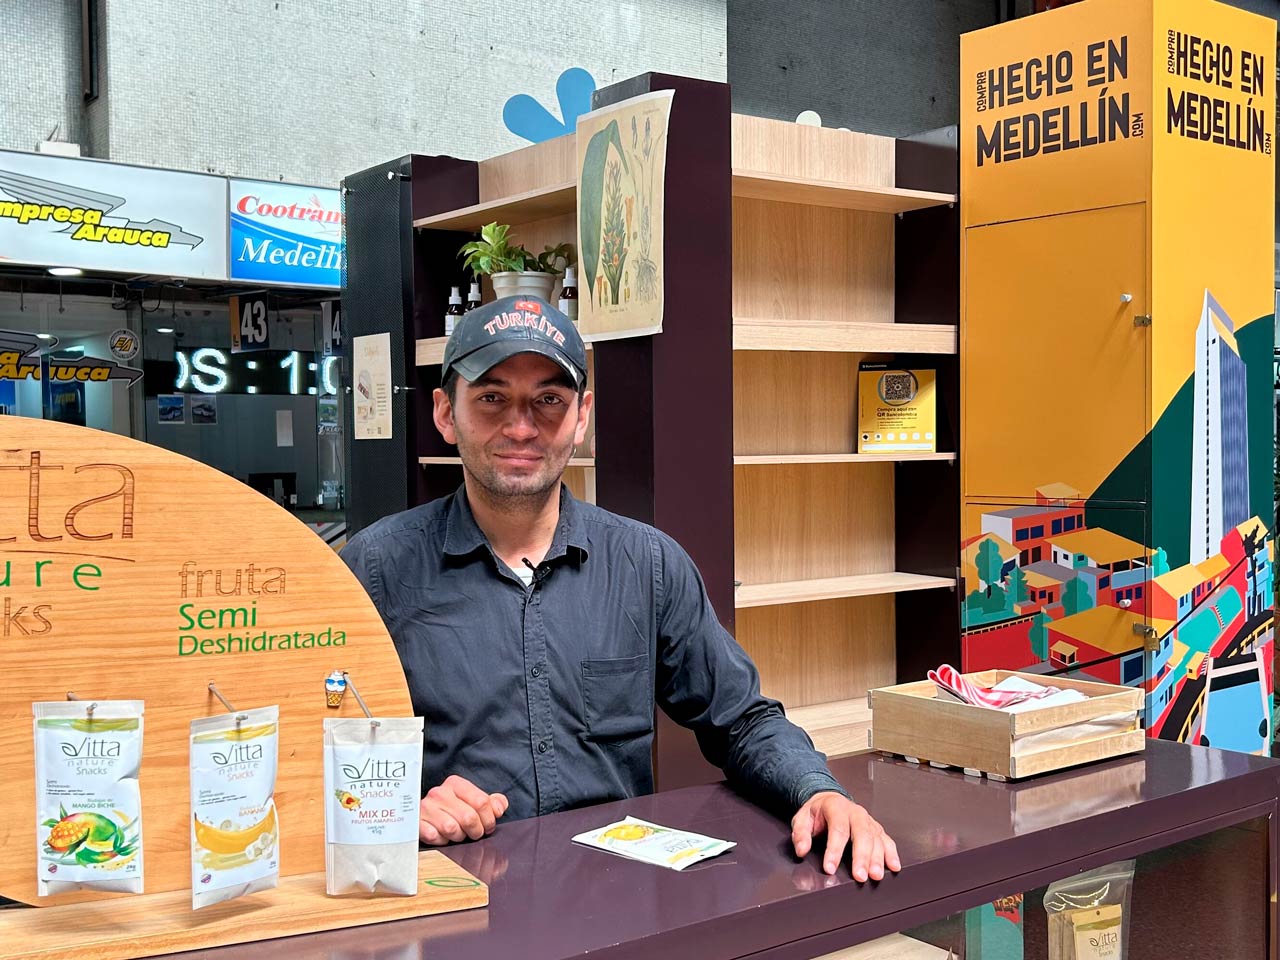 En Amor y Amistad apoya los productos locales de los emprendedores de Compra Hecho en Medellín